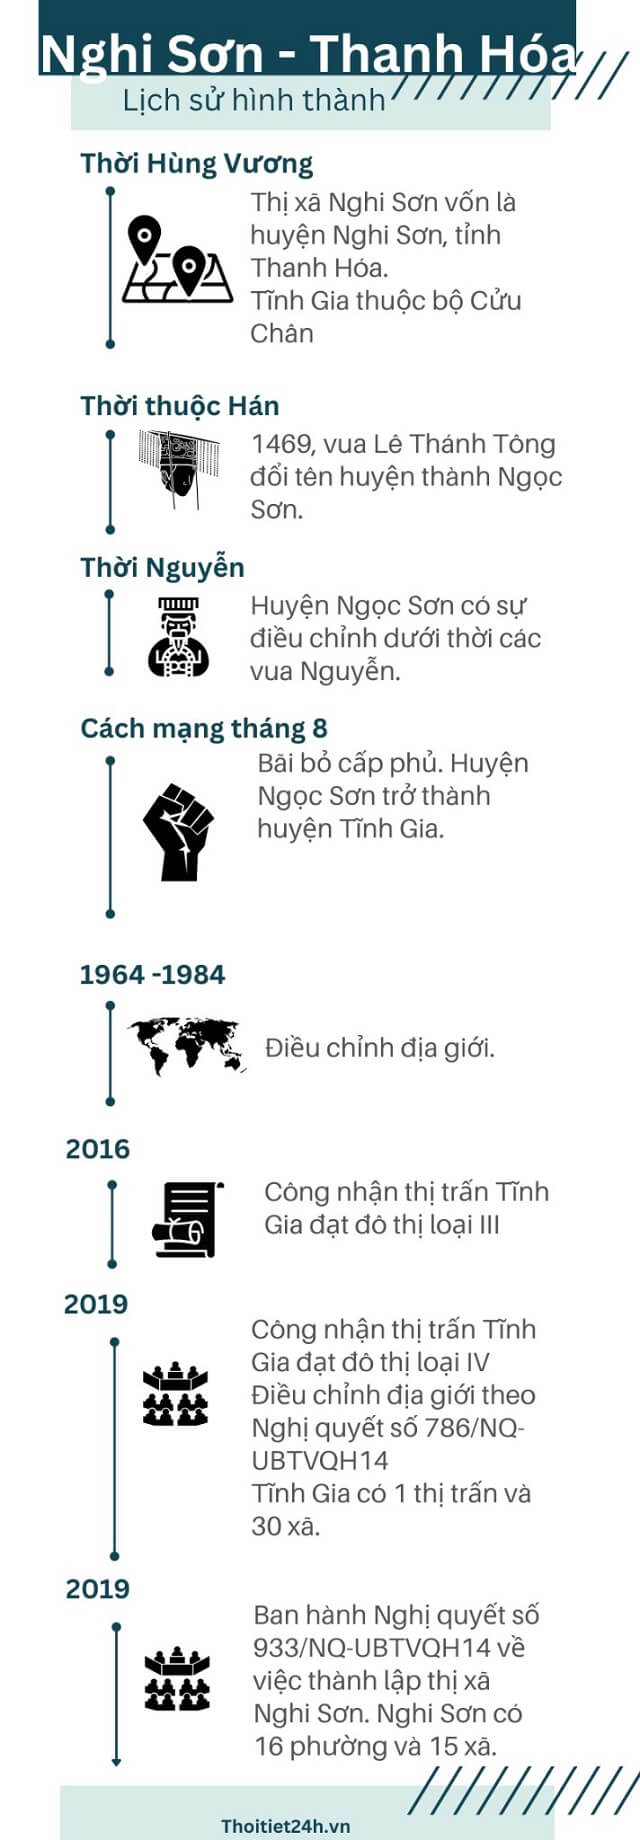 Lịch sử hình thành và phát triển Nghi Sơn, Thanh Hóa